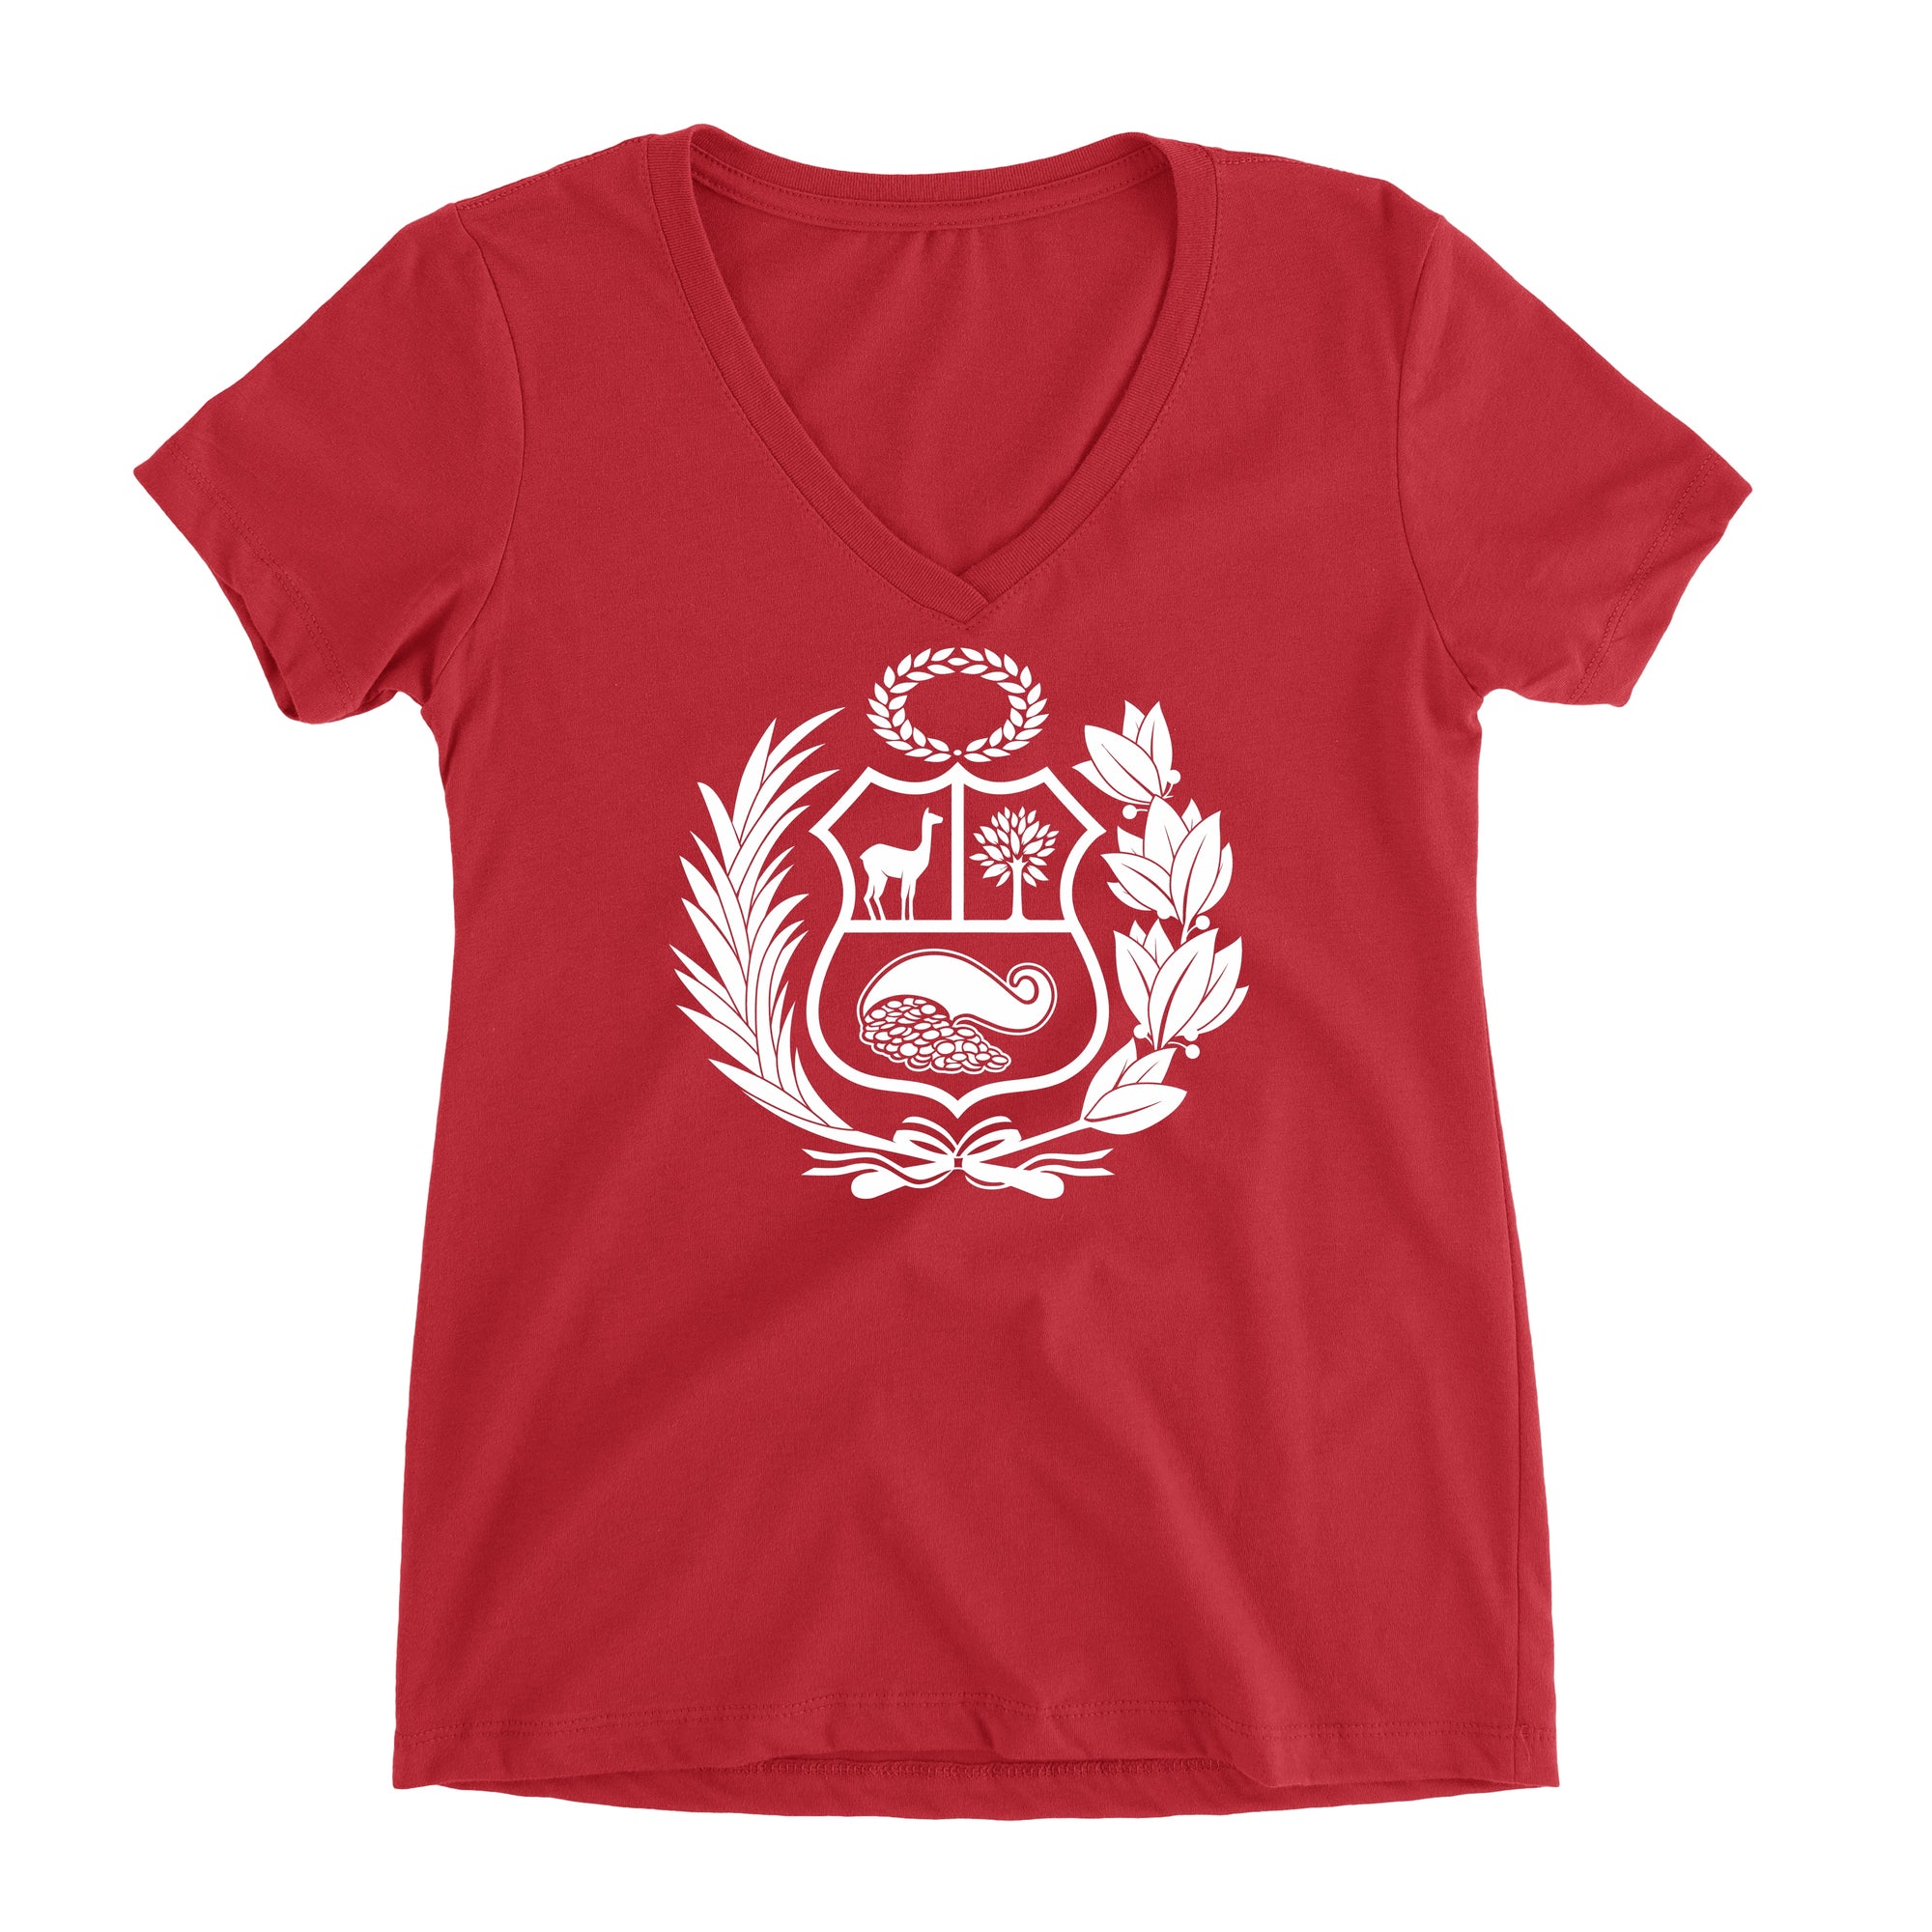 Peru Escudo Red Short Sleeve V-Neck T-Shirt for Juniors